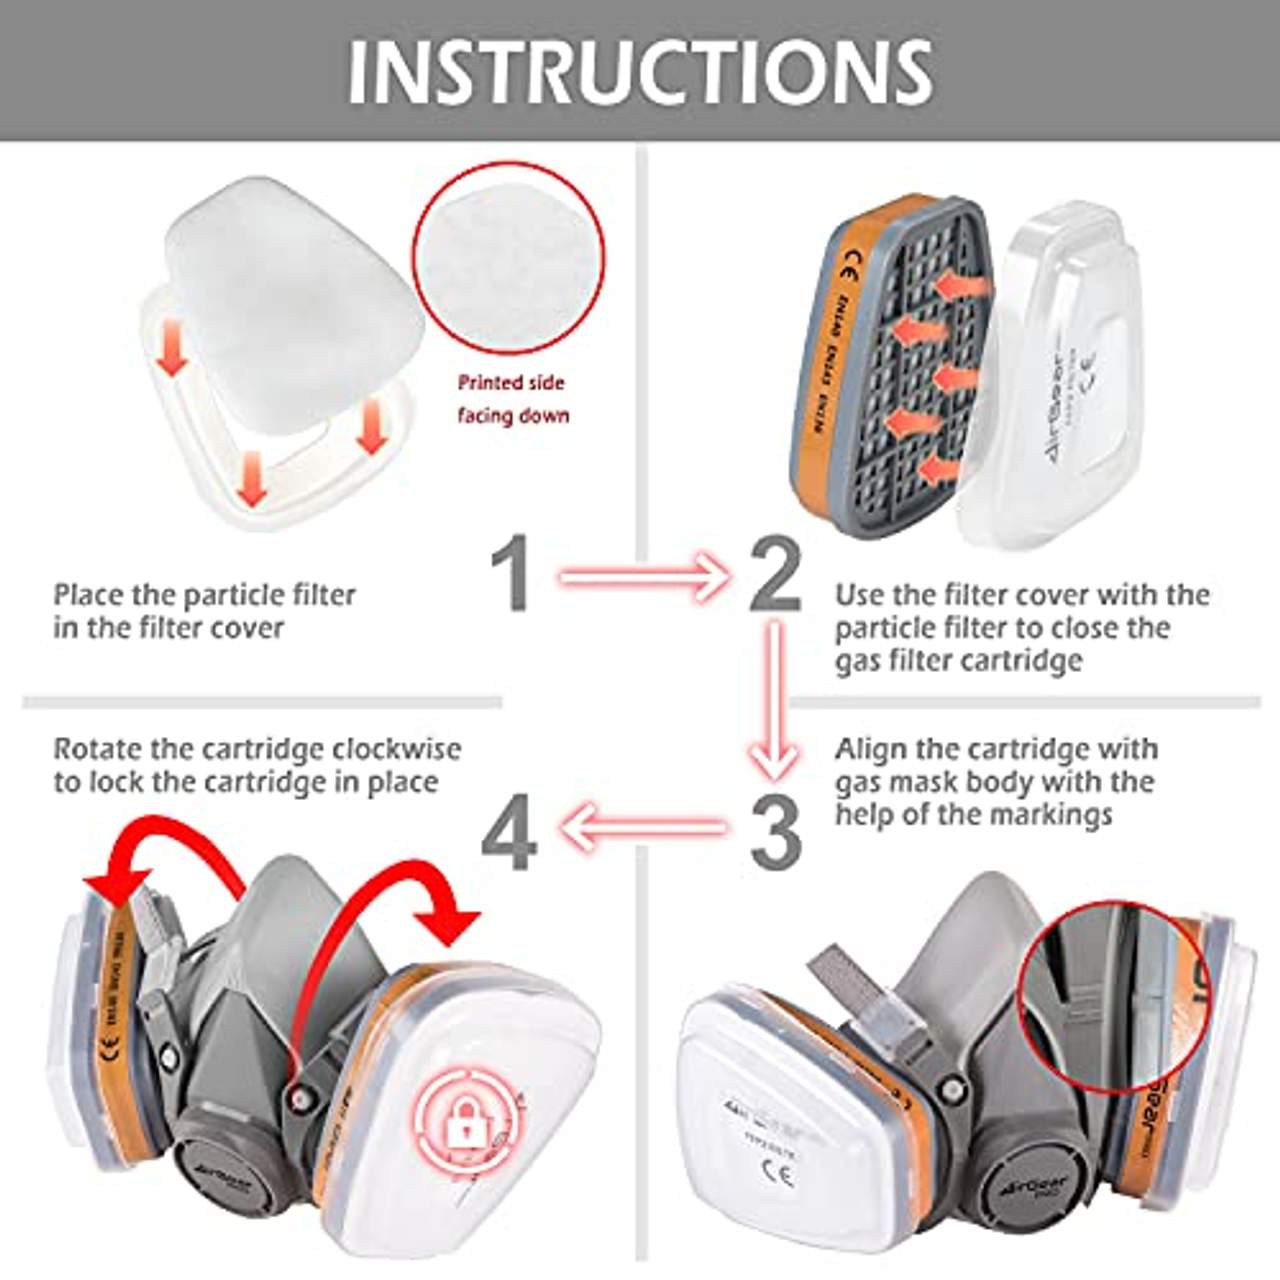 AirGearPro G-500 Atemschutzmaske mit Filter